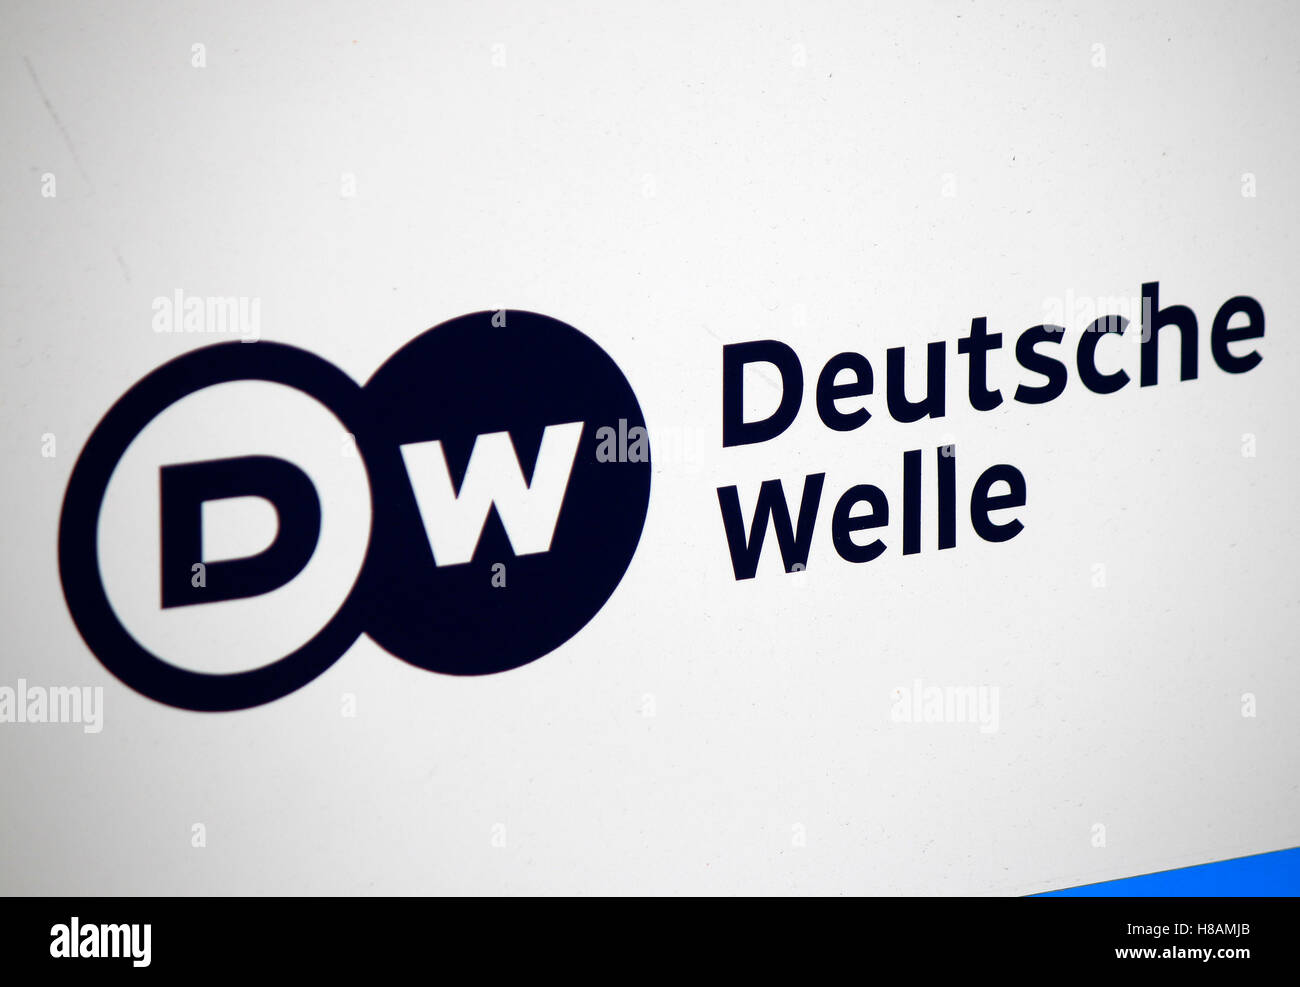 das Logo der Marke 'DW Deutsche Welle', Berlin. Stock Photo